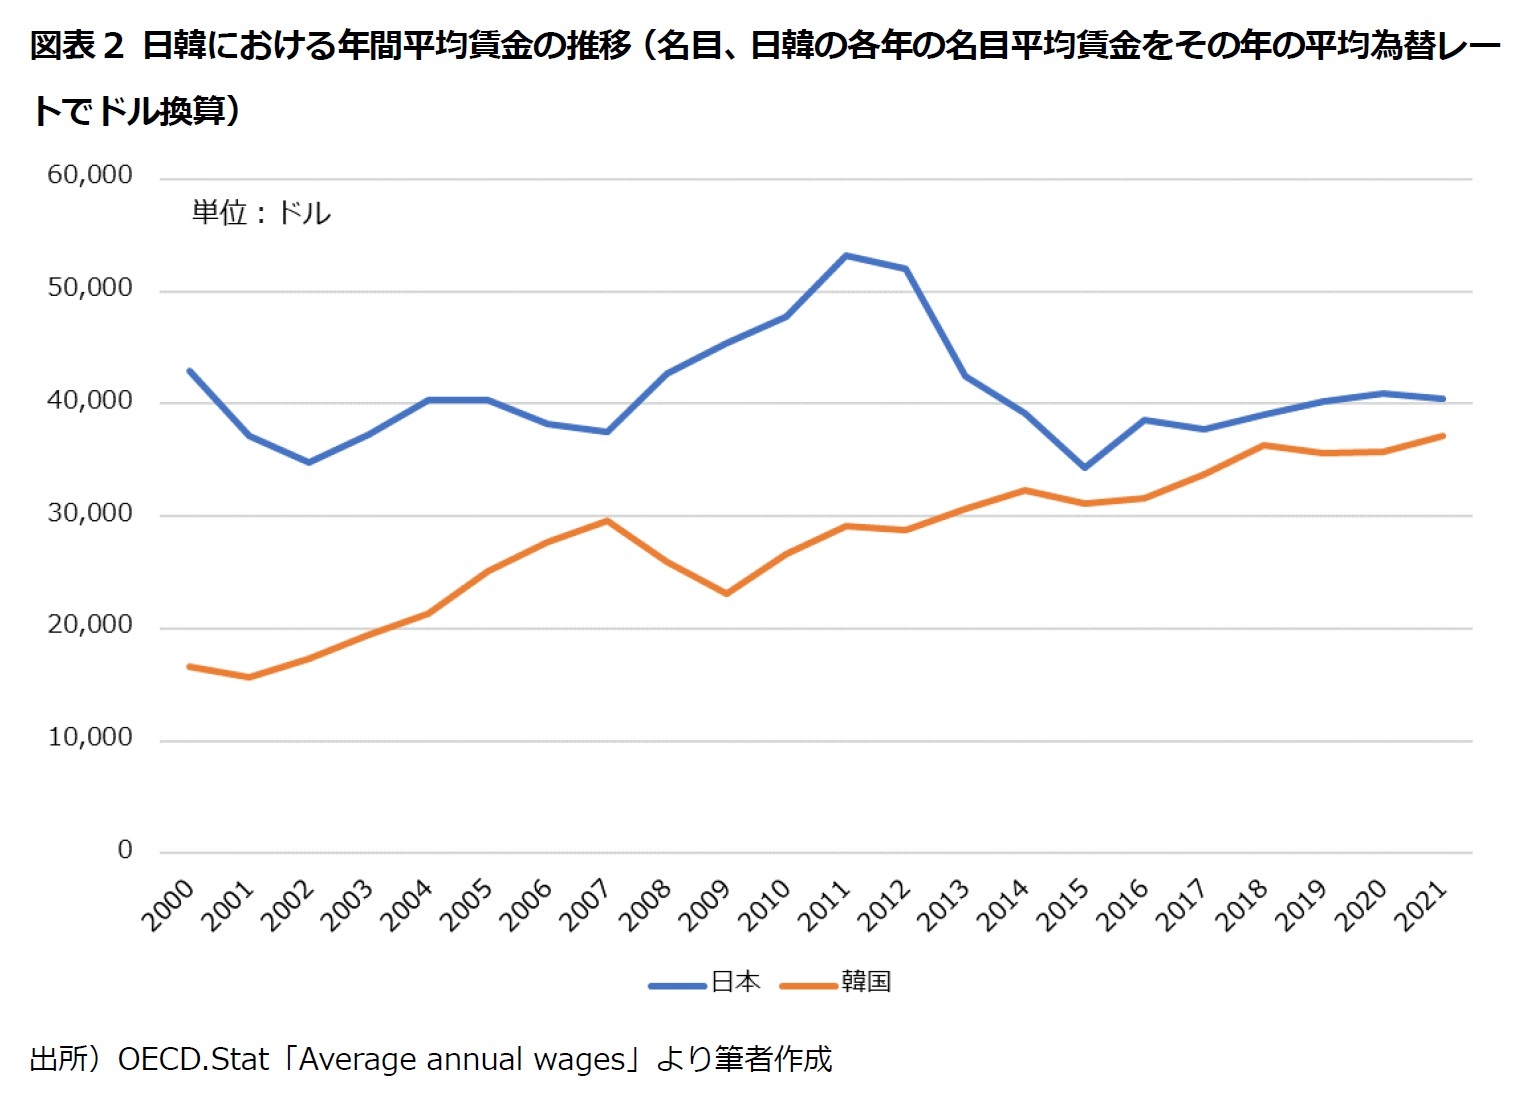 図表2 日韓における年間平均賃金の推移（名目、日韓の各年の名目平均賃金をその年の平均為替レートでドル換算）